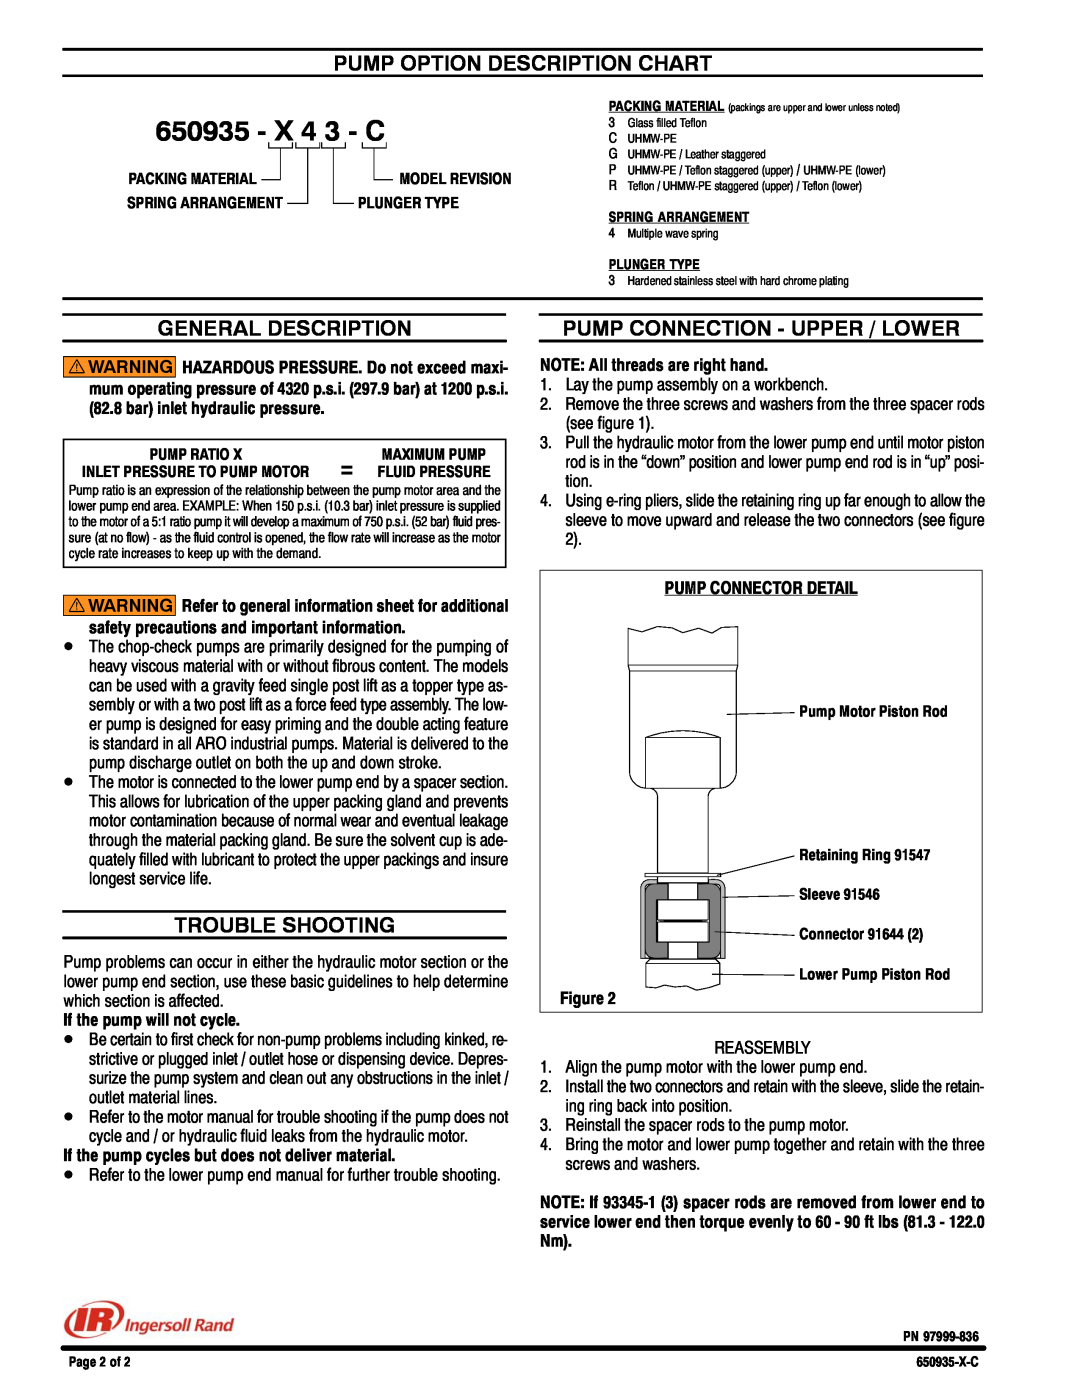 Ingersoll-Rand 650935-X43-C specifications Pump Option Description Chart, General Description, Trouble Shooting, X 4 3 - C 